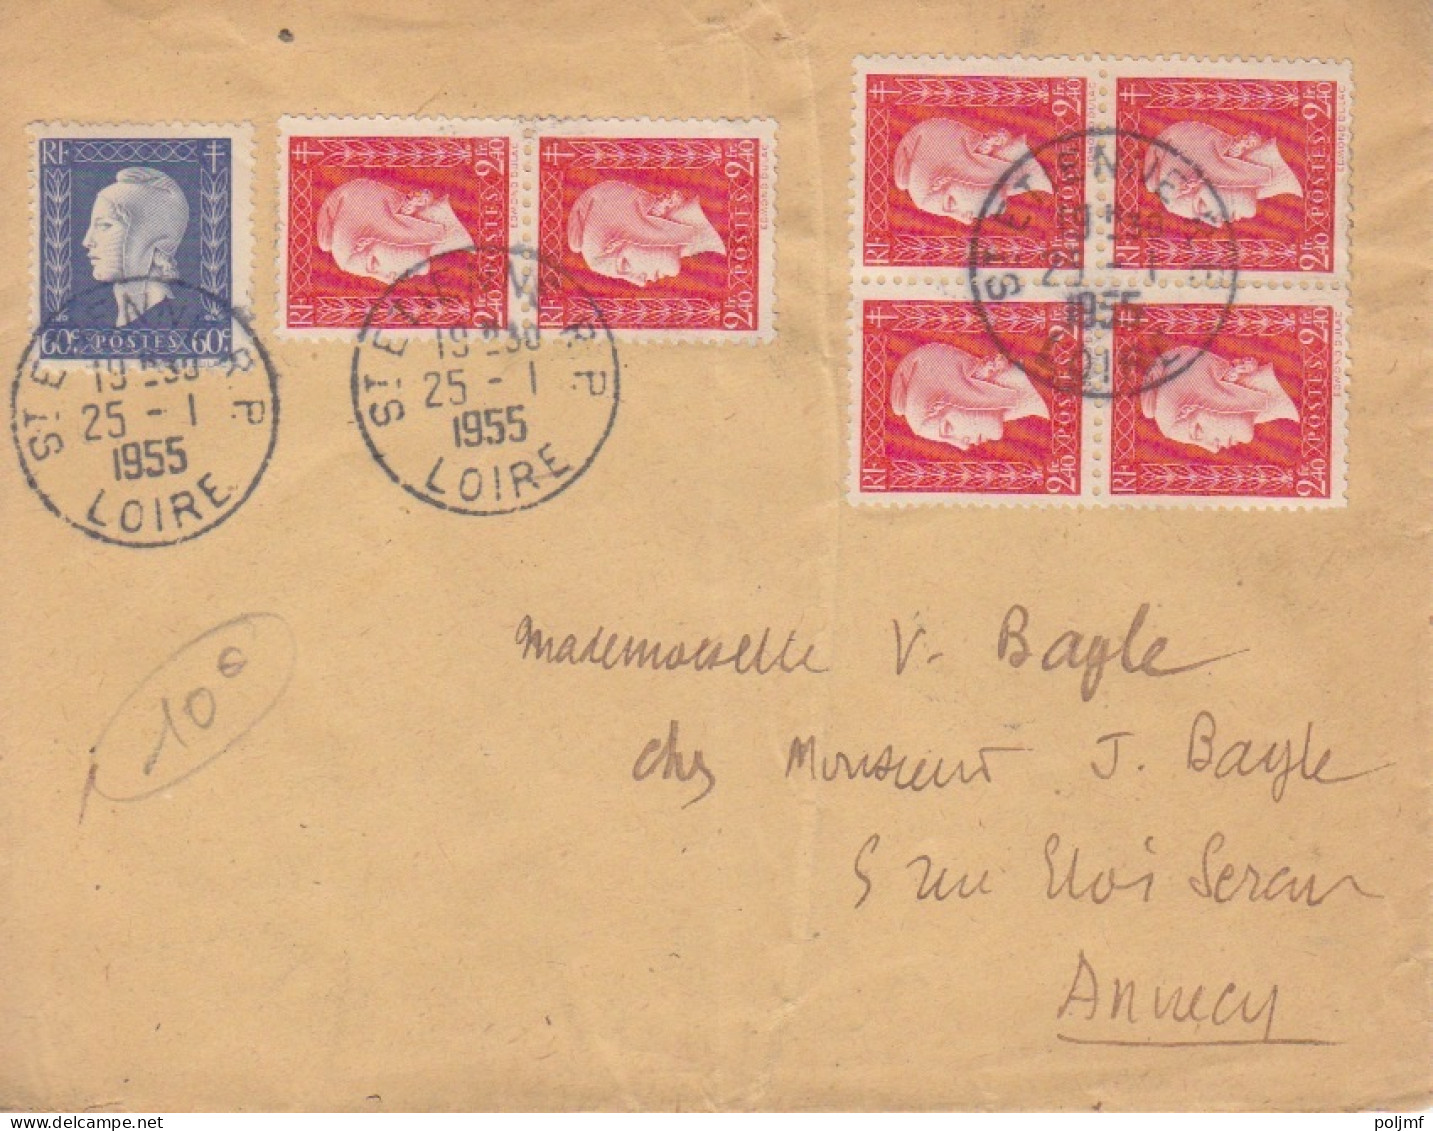 Lettre Obl. St Etienne Le 25/1/55 Sur 60c Et 2F40 X 6 Dulac = 15F N° 686, 693 (tarif Du 8/12/51) Pour Annecy - 1944-45 Marianne De Dulac